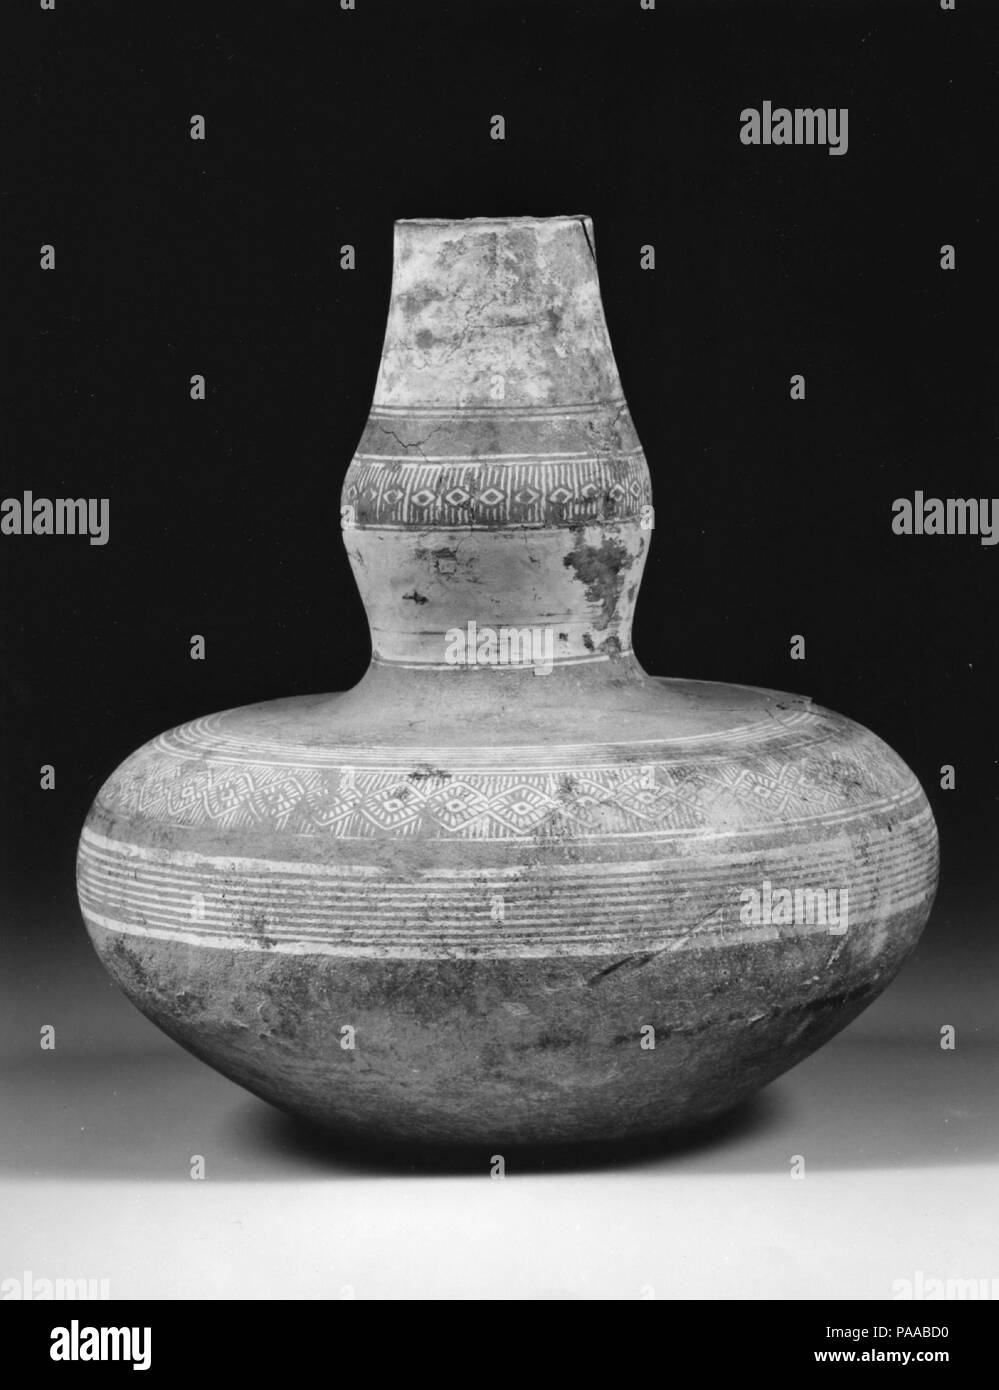 Flasche mit Bauchigen Hals. Kultur: Thailand. Abmessungen: H. 6 5/8 in. (16,9 cm). Datum: Ca. 14. Jahrhundert. Museum: Metropolitan Museum of Art, New York, USA. Stockfoto